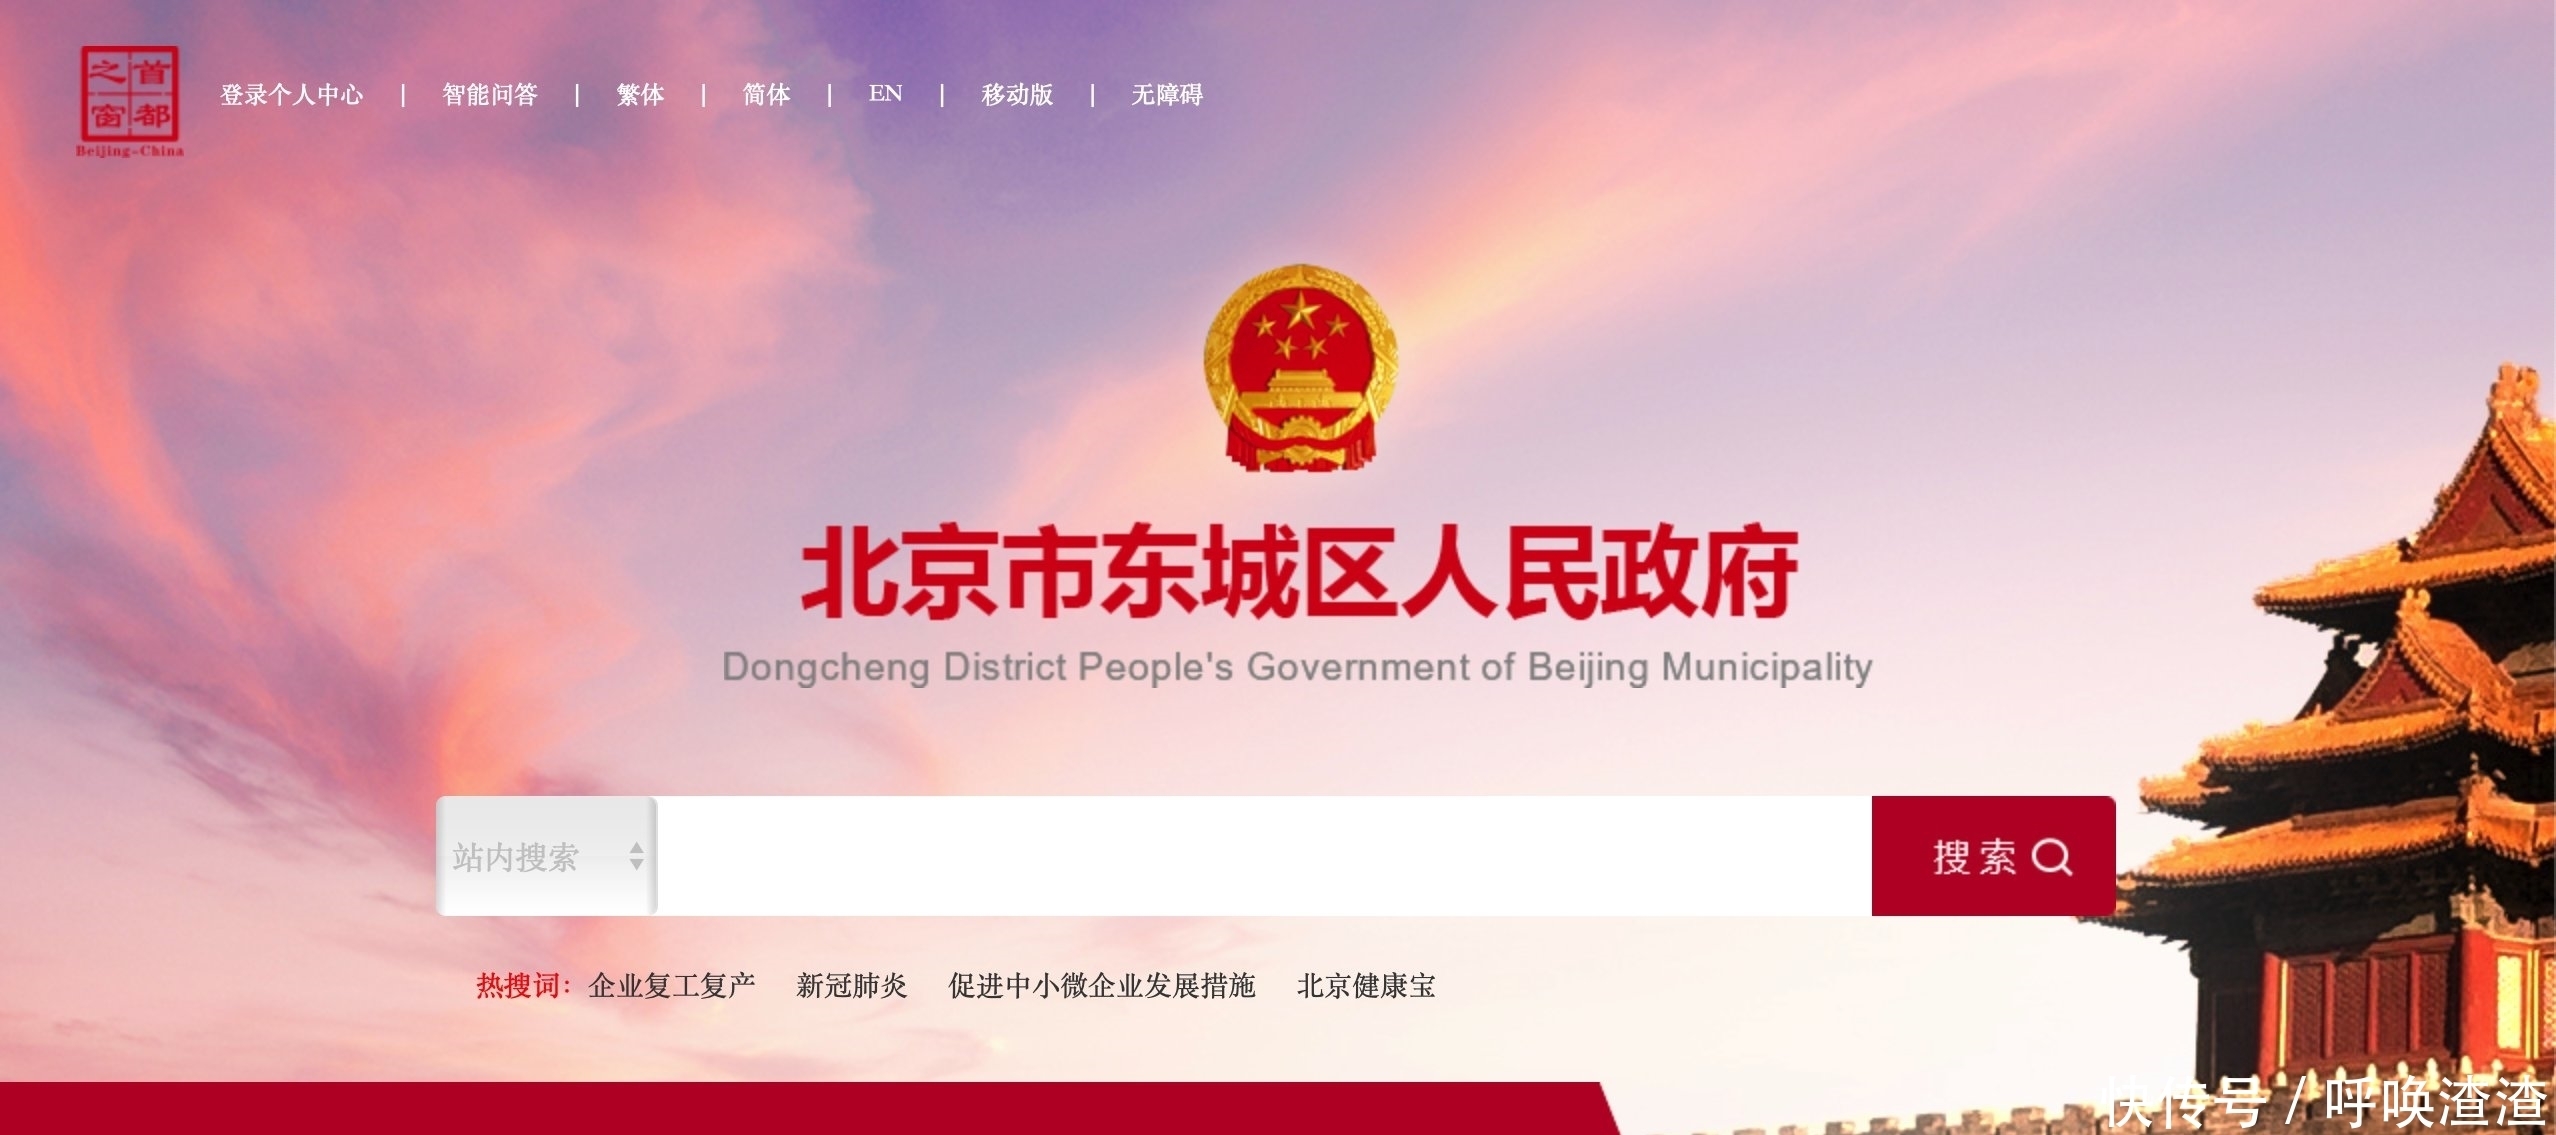 北京16区政府网站改版,首屏有了个性化形象